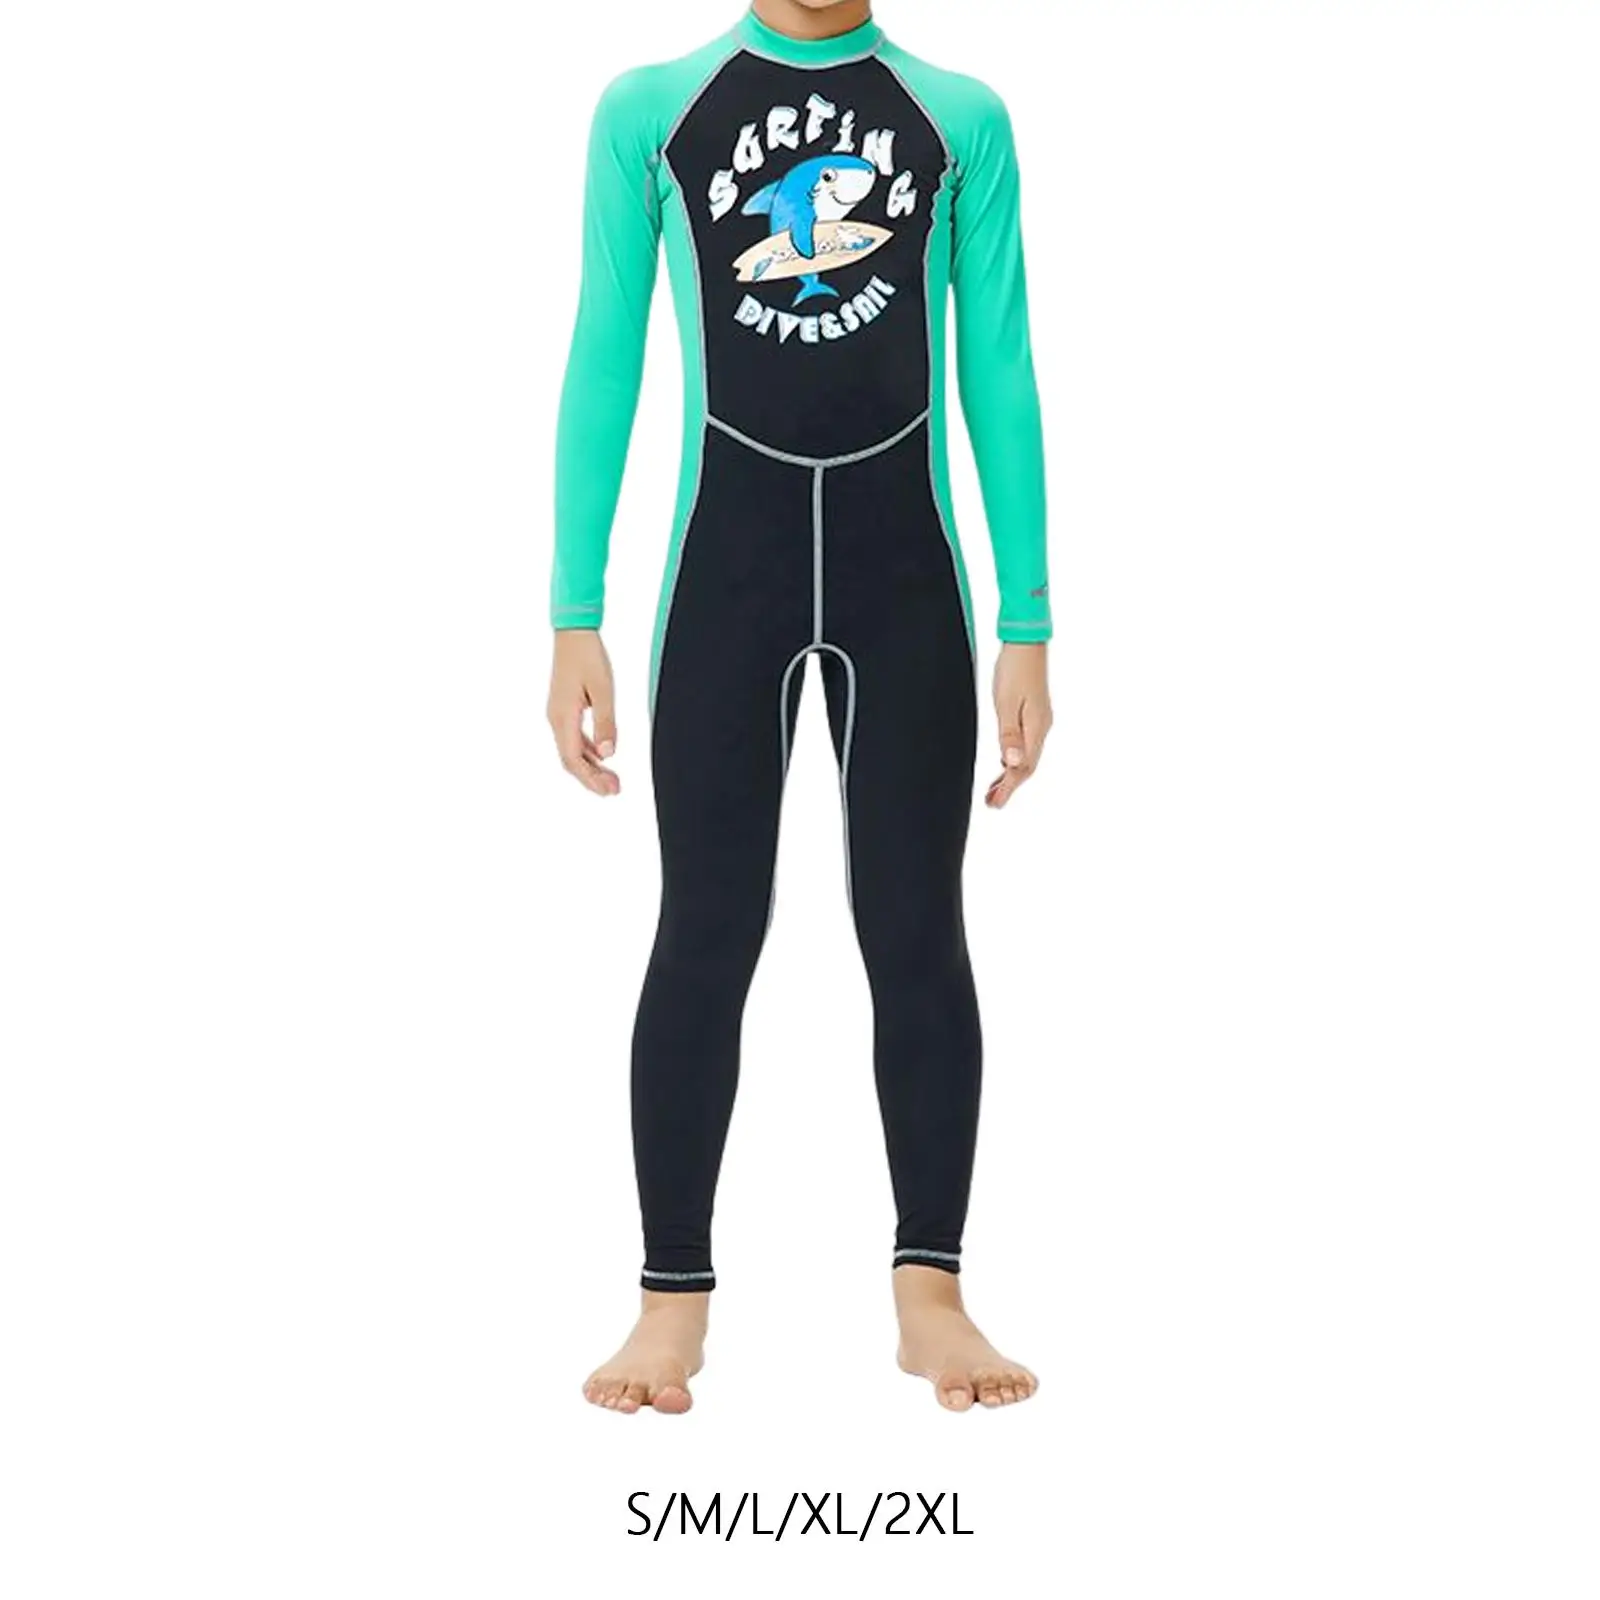 Kids Wetsuits Jumpsuit Scuba Diving Suit for Boys Wet Suit Full suits Girls